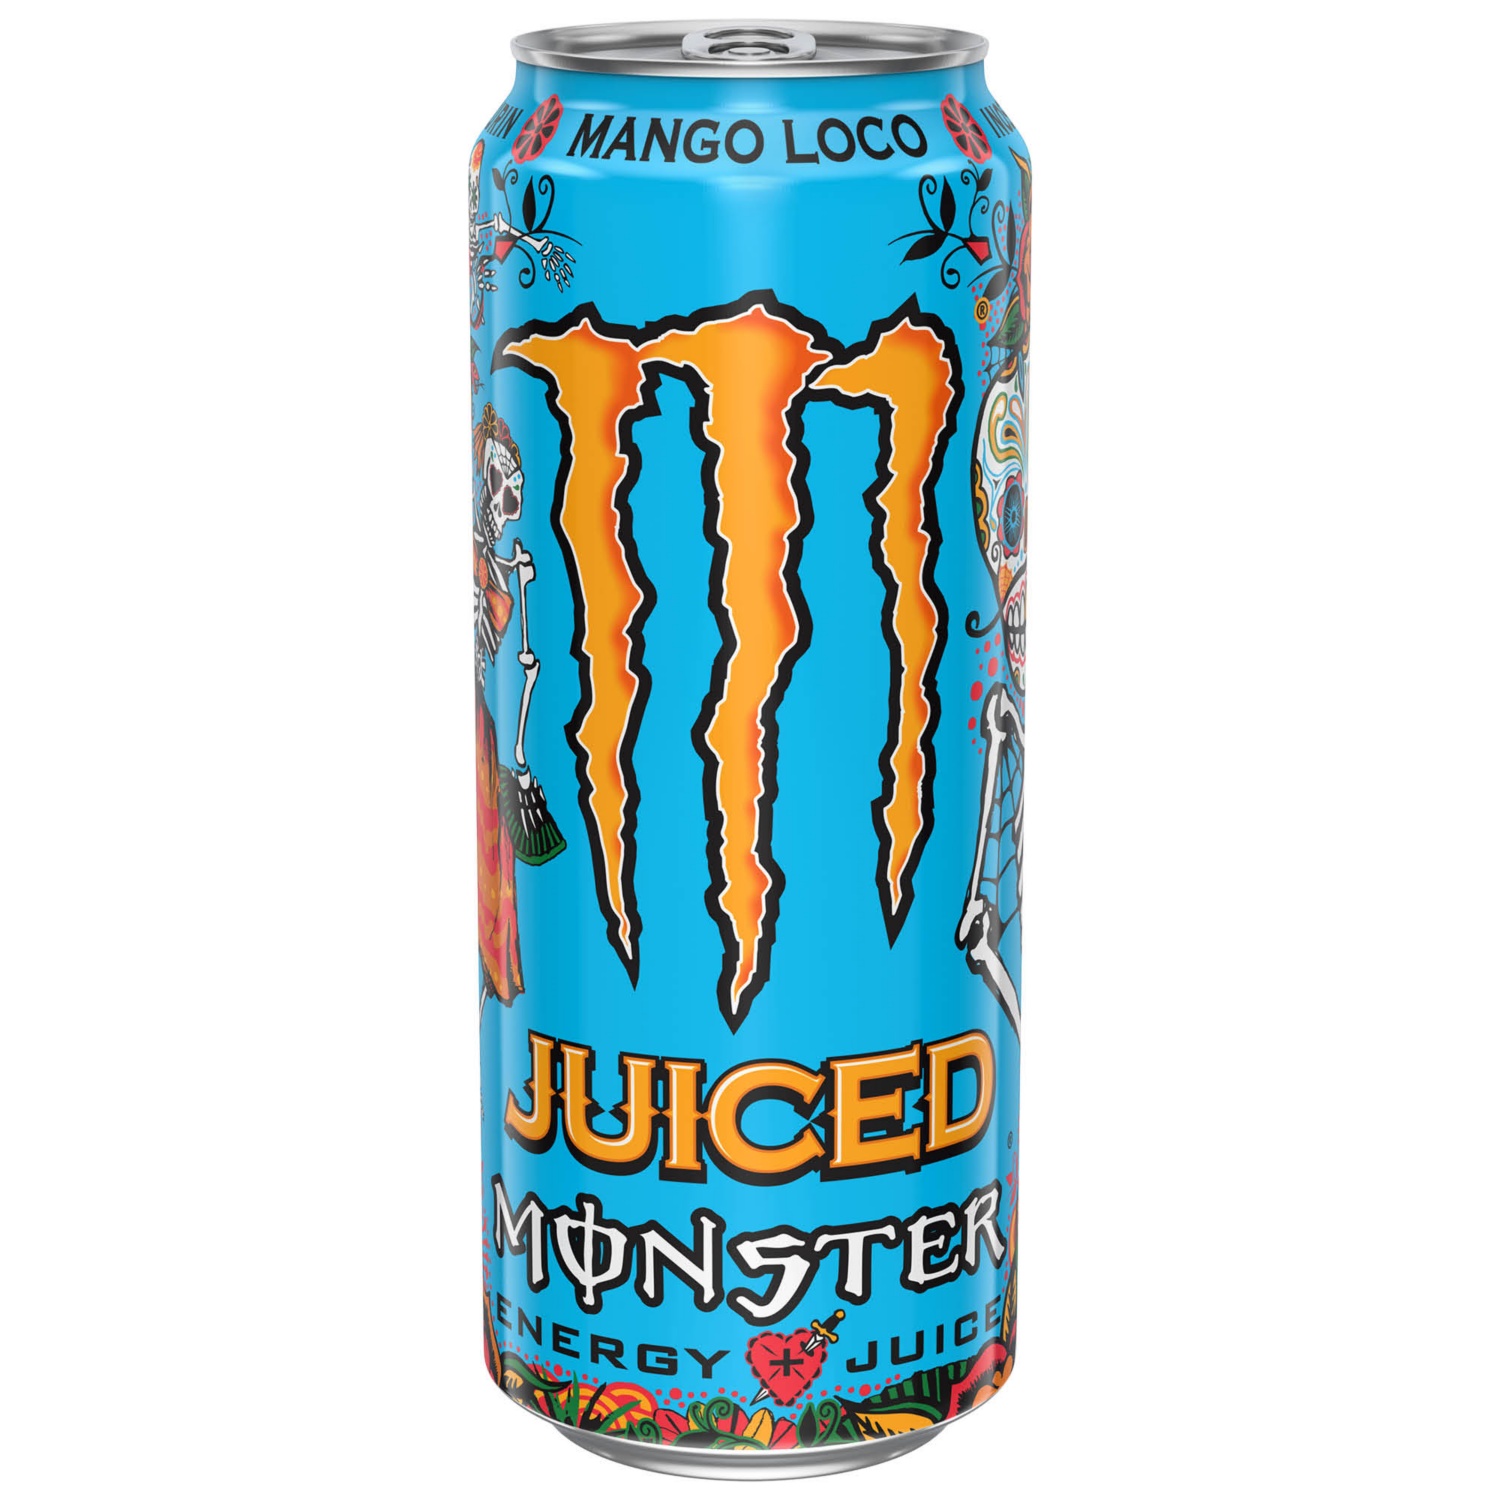 MONSTER ENERGY, Monster Energy,  Mango Loco